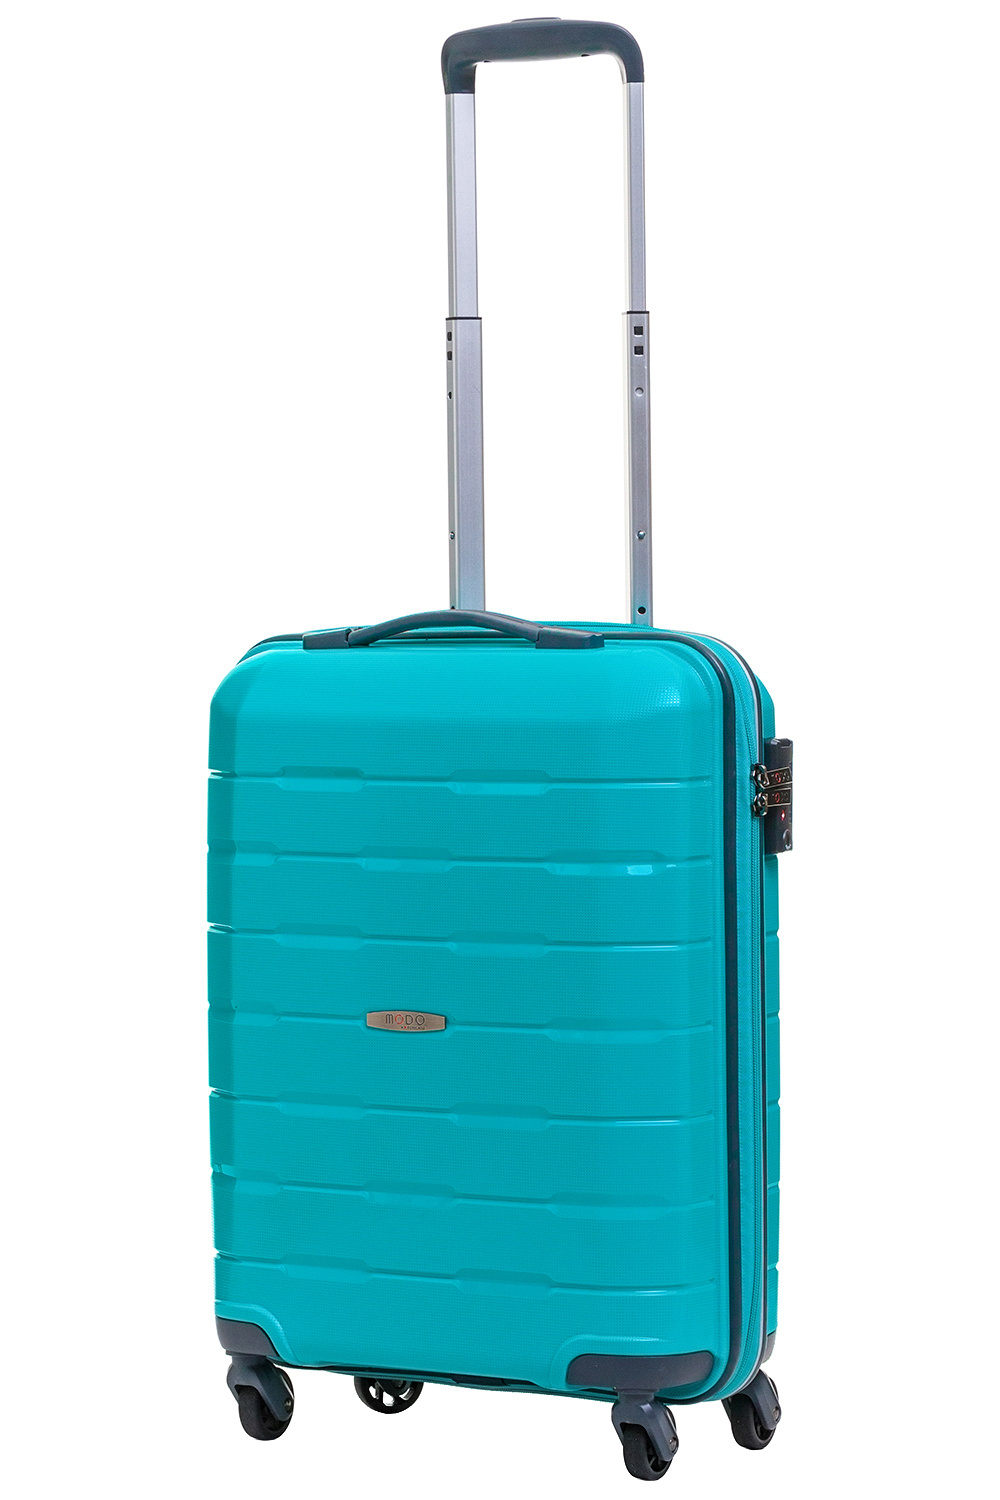 Небольшой размер чемодана S(до 55 см) идеально подходит для командировок и коротких поездок, а также позволяет взять чемодан в салон самолёта в качестве ручной клади. 